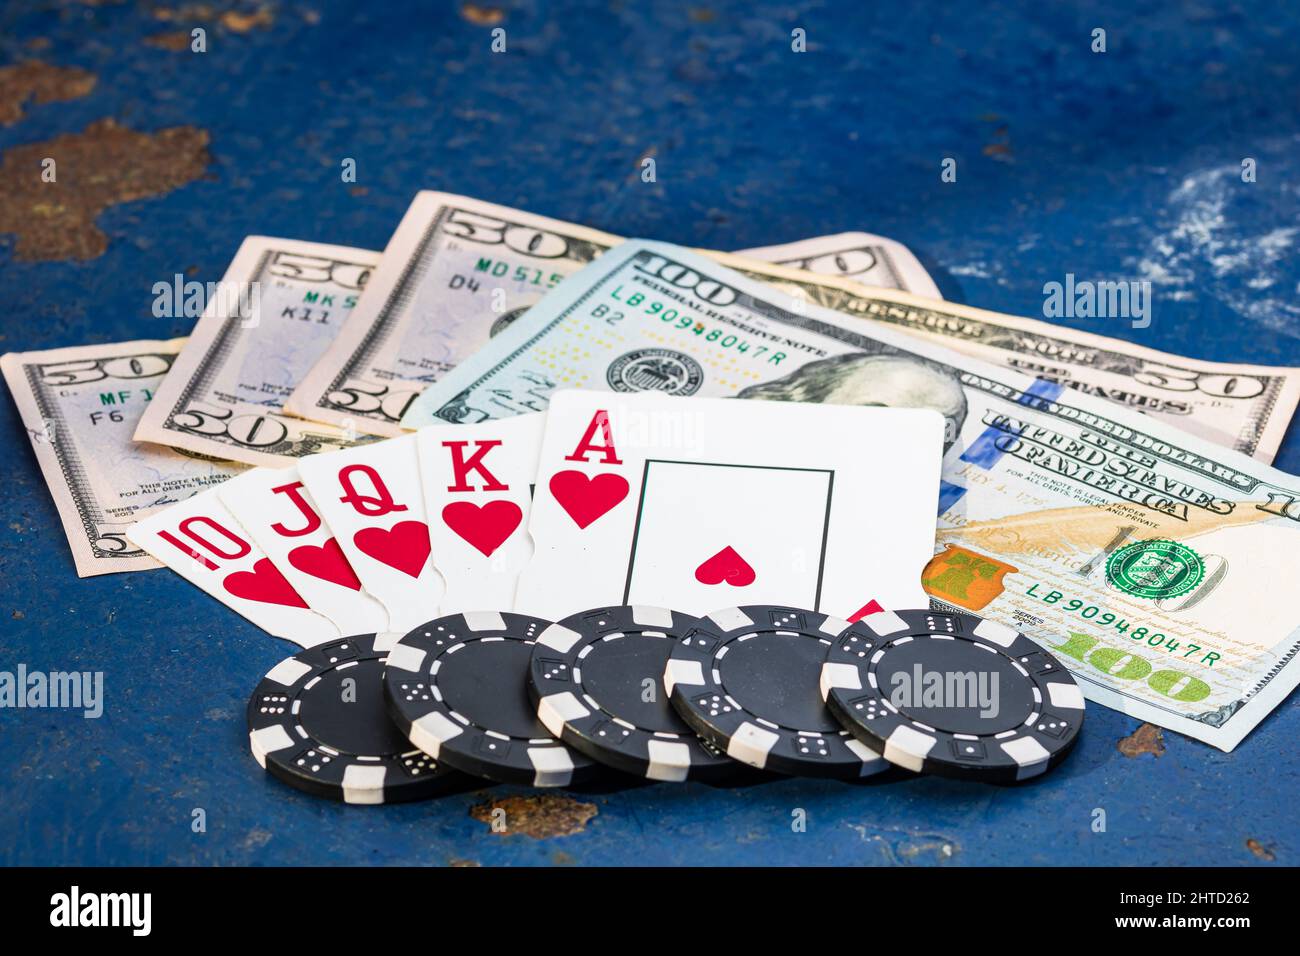 Nahaufnahme von Spielkarten, Geld und Pokerchips auf einer blauen Oberfläche Stockfoto